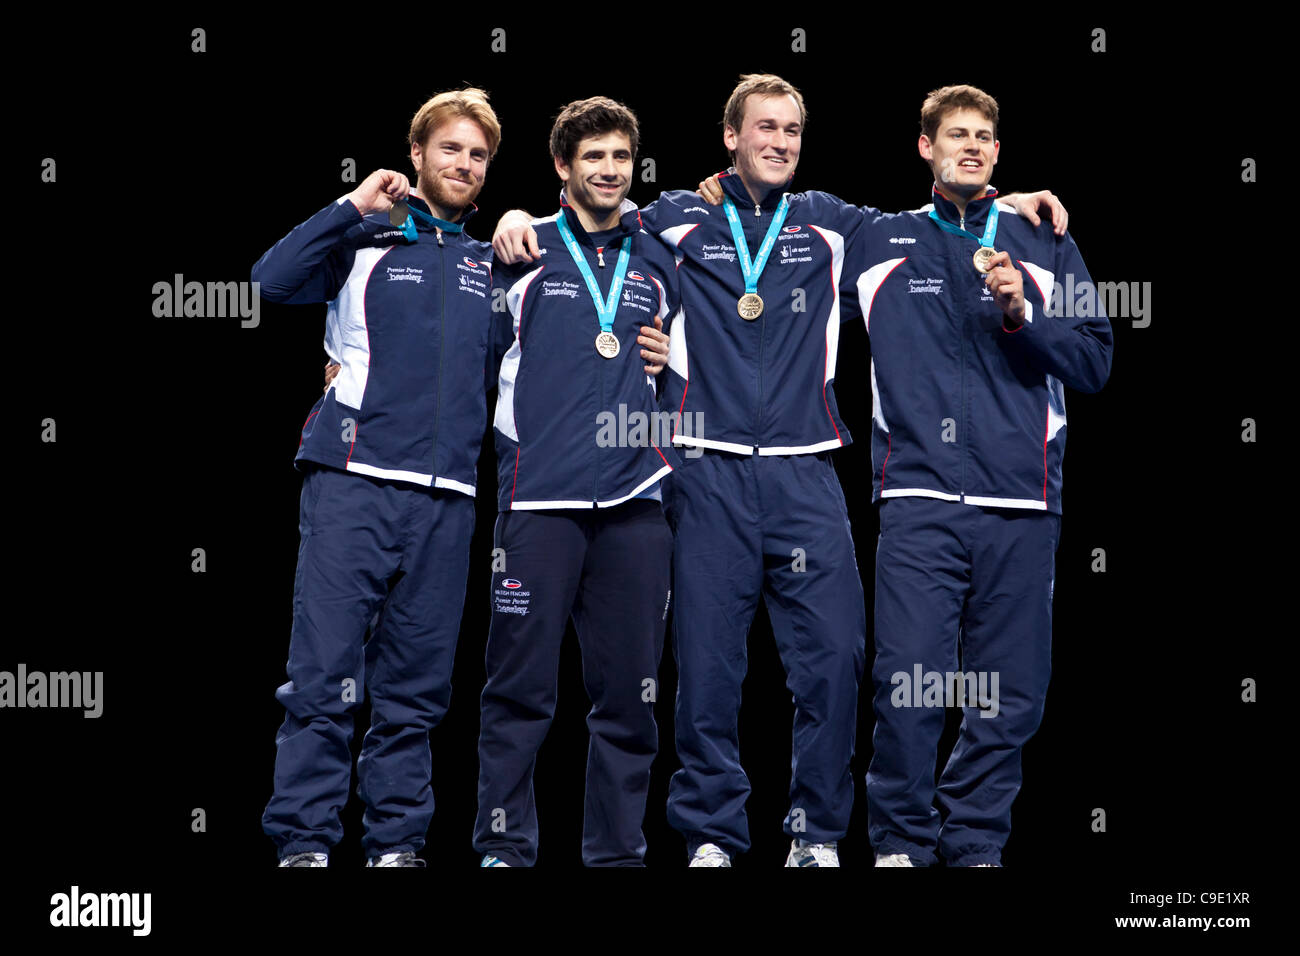 Richard Kruse, Laurence Halsted, James Kenber y Ed Jefferies del equipo de Gran Bretaña ganar la medalla de oro en la final del equipo de esgrima de lámina en el Evento de Prueba Olímpico, London's arena de ExCeL. Foto de stock